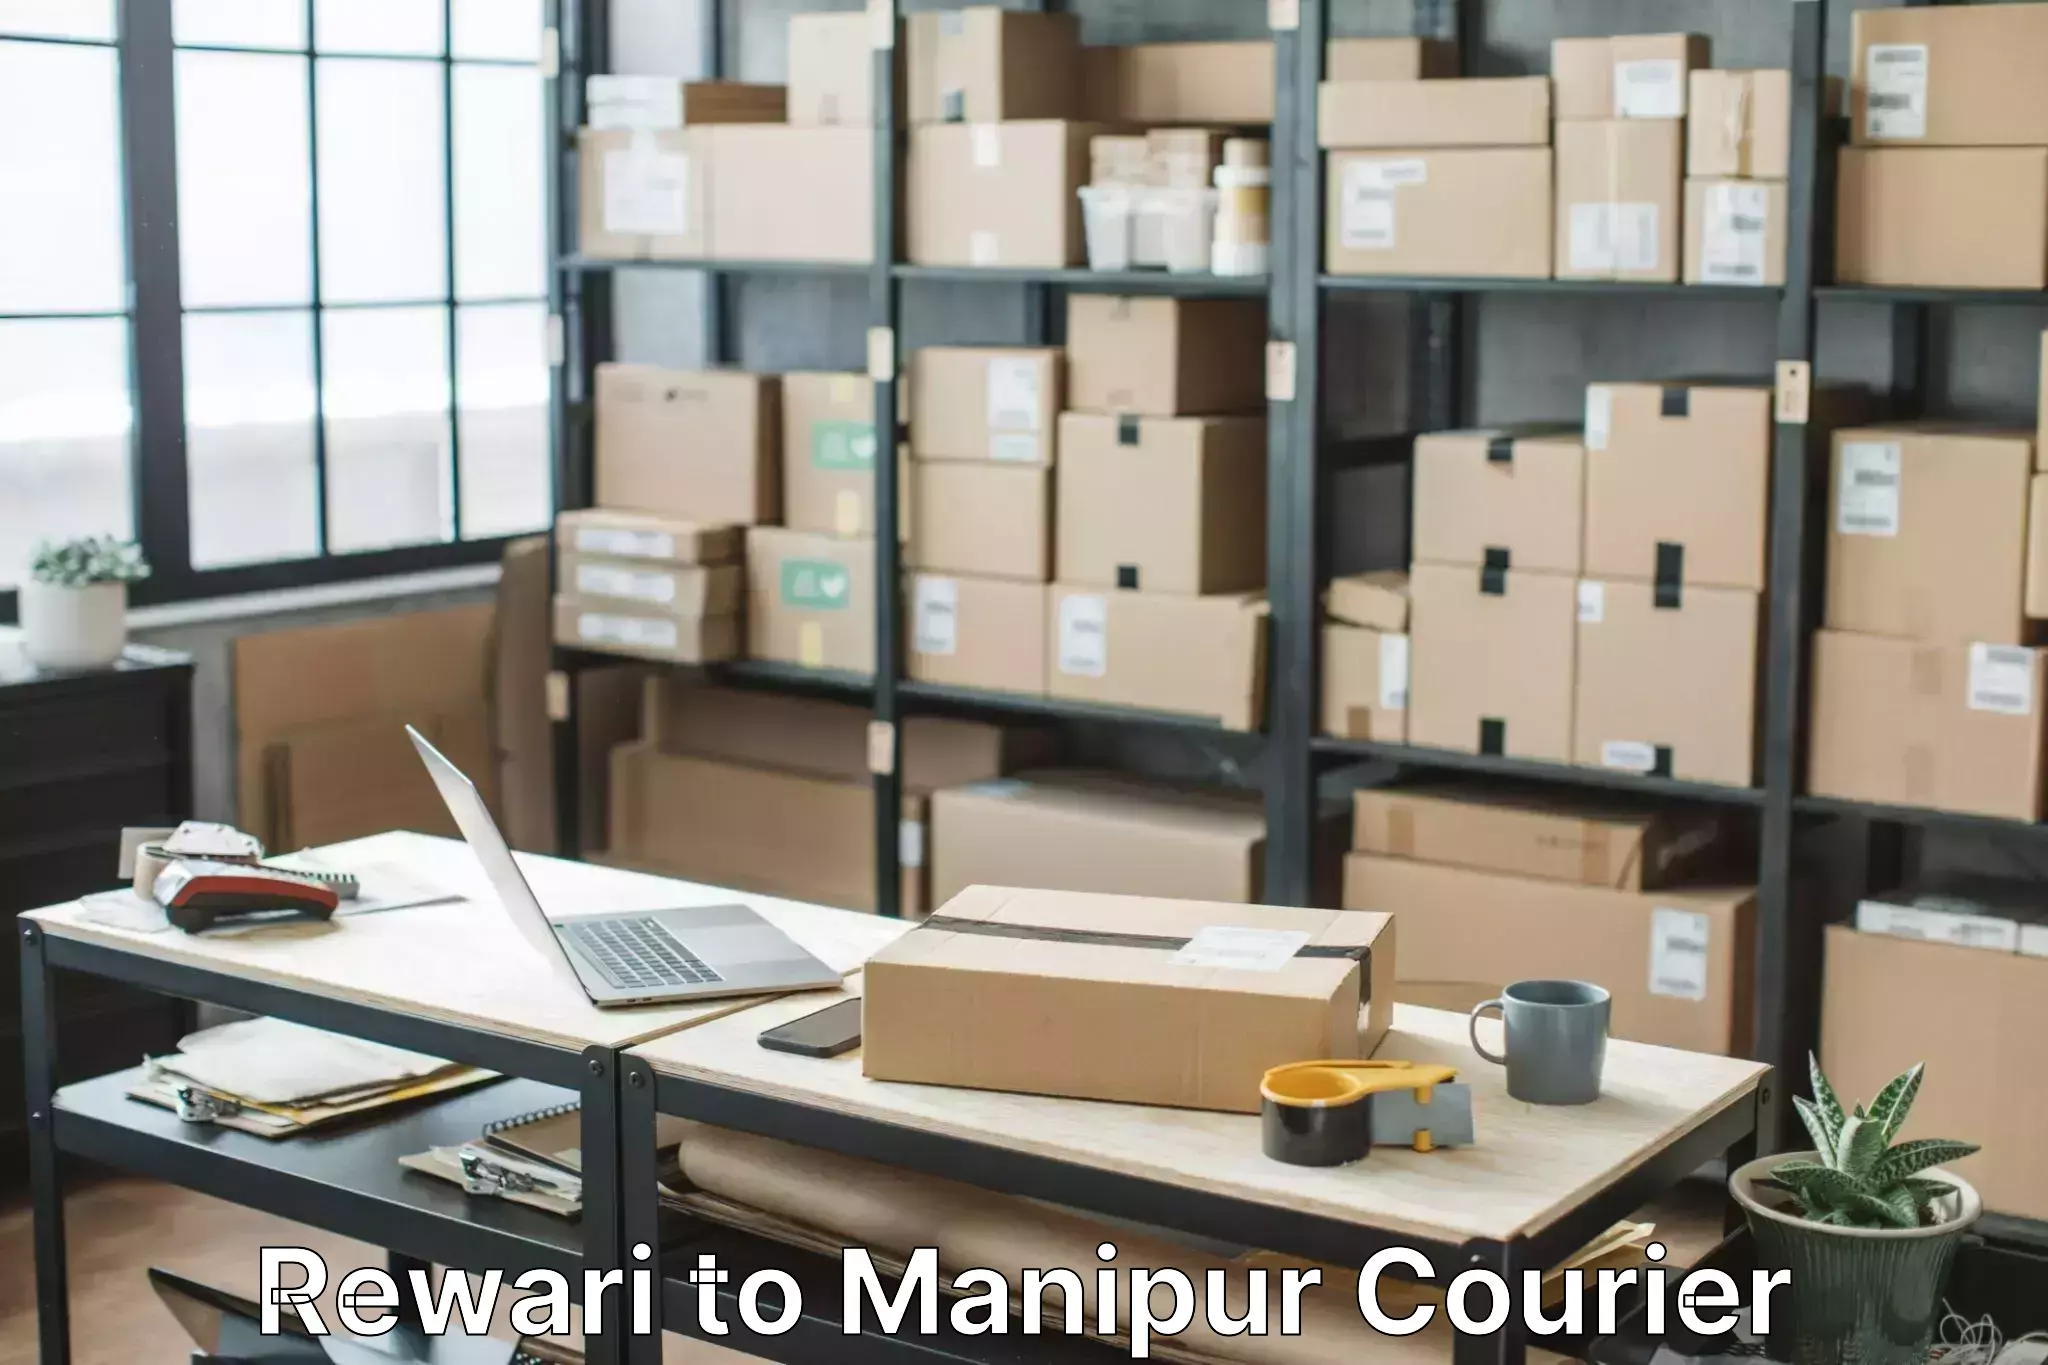 Furniture moving experts Rewari to Imphal